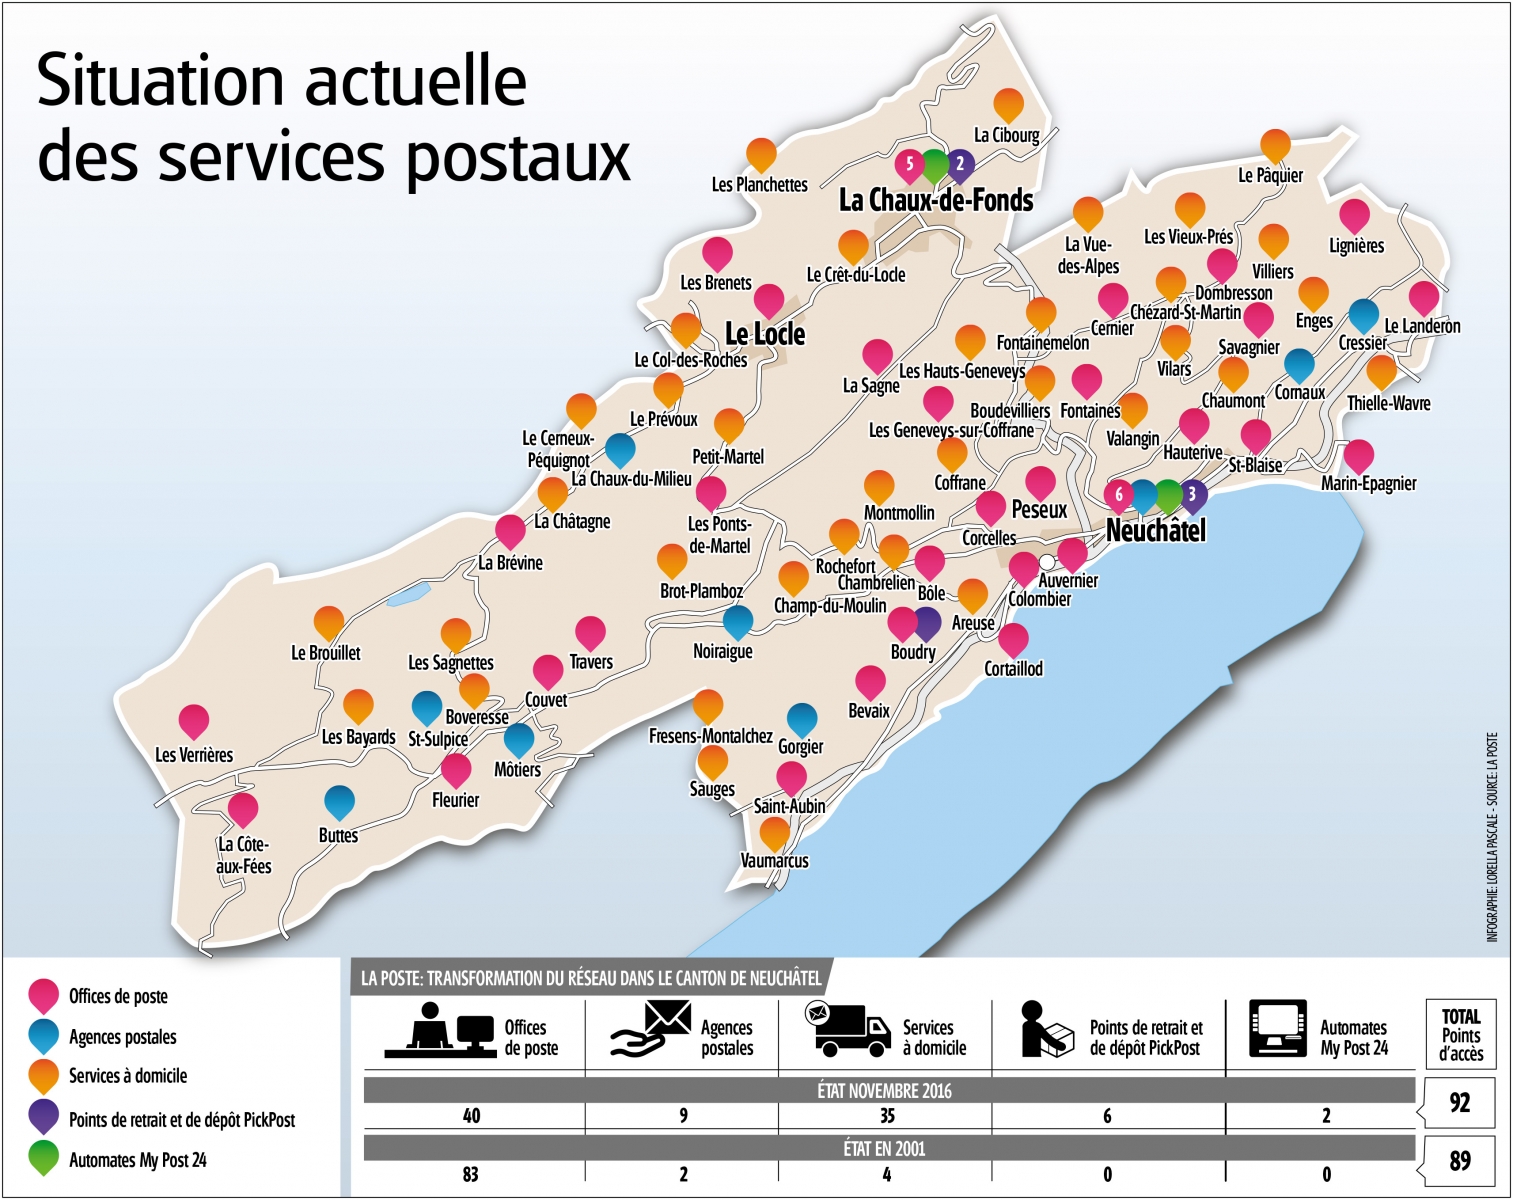 Les points d'accès des services postaux dans le canton de Neuchâtel.